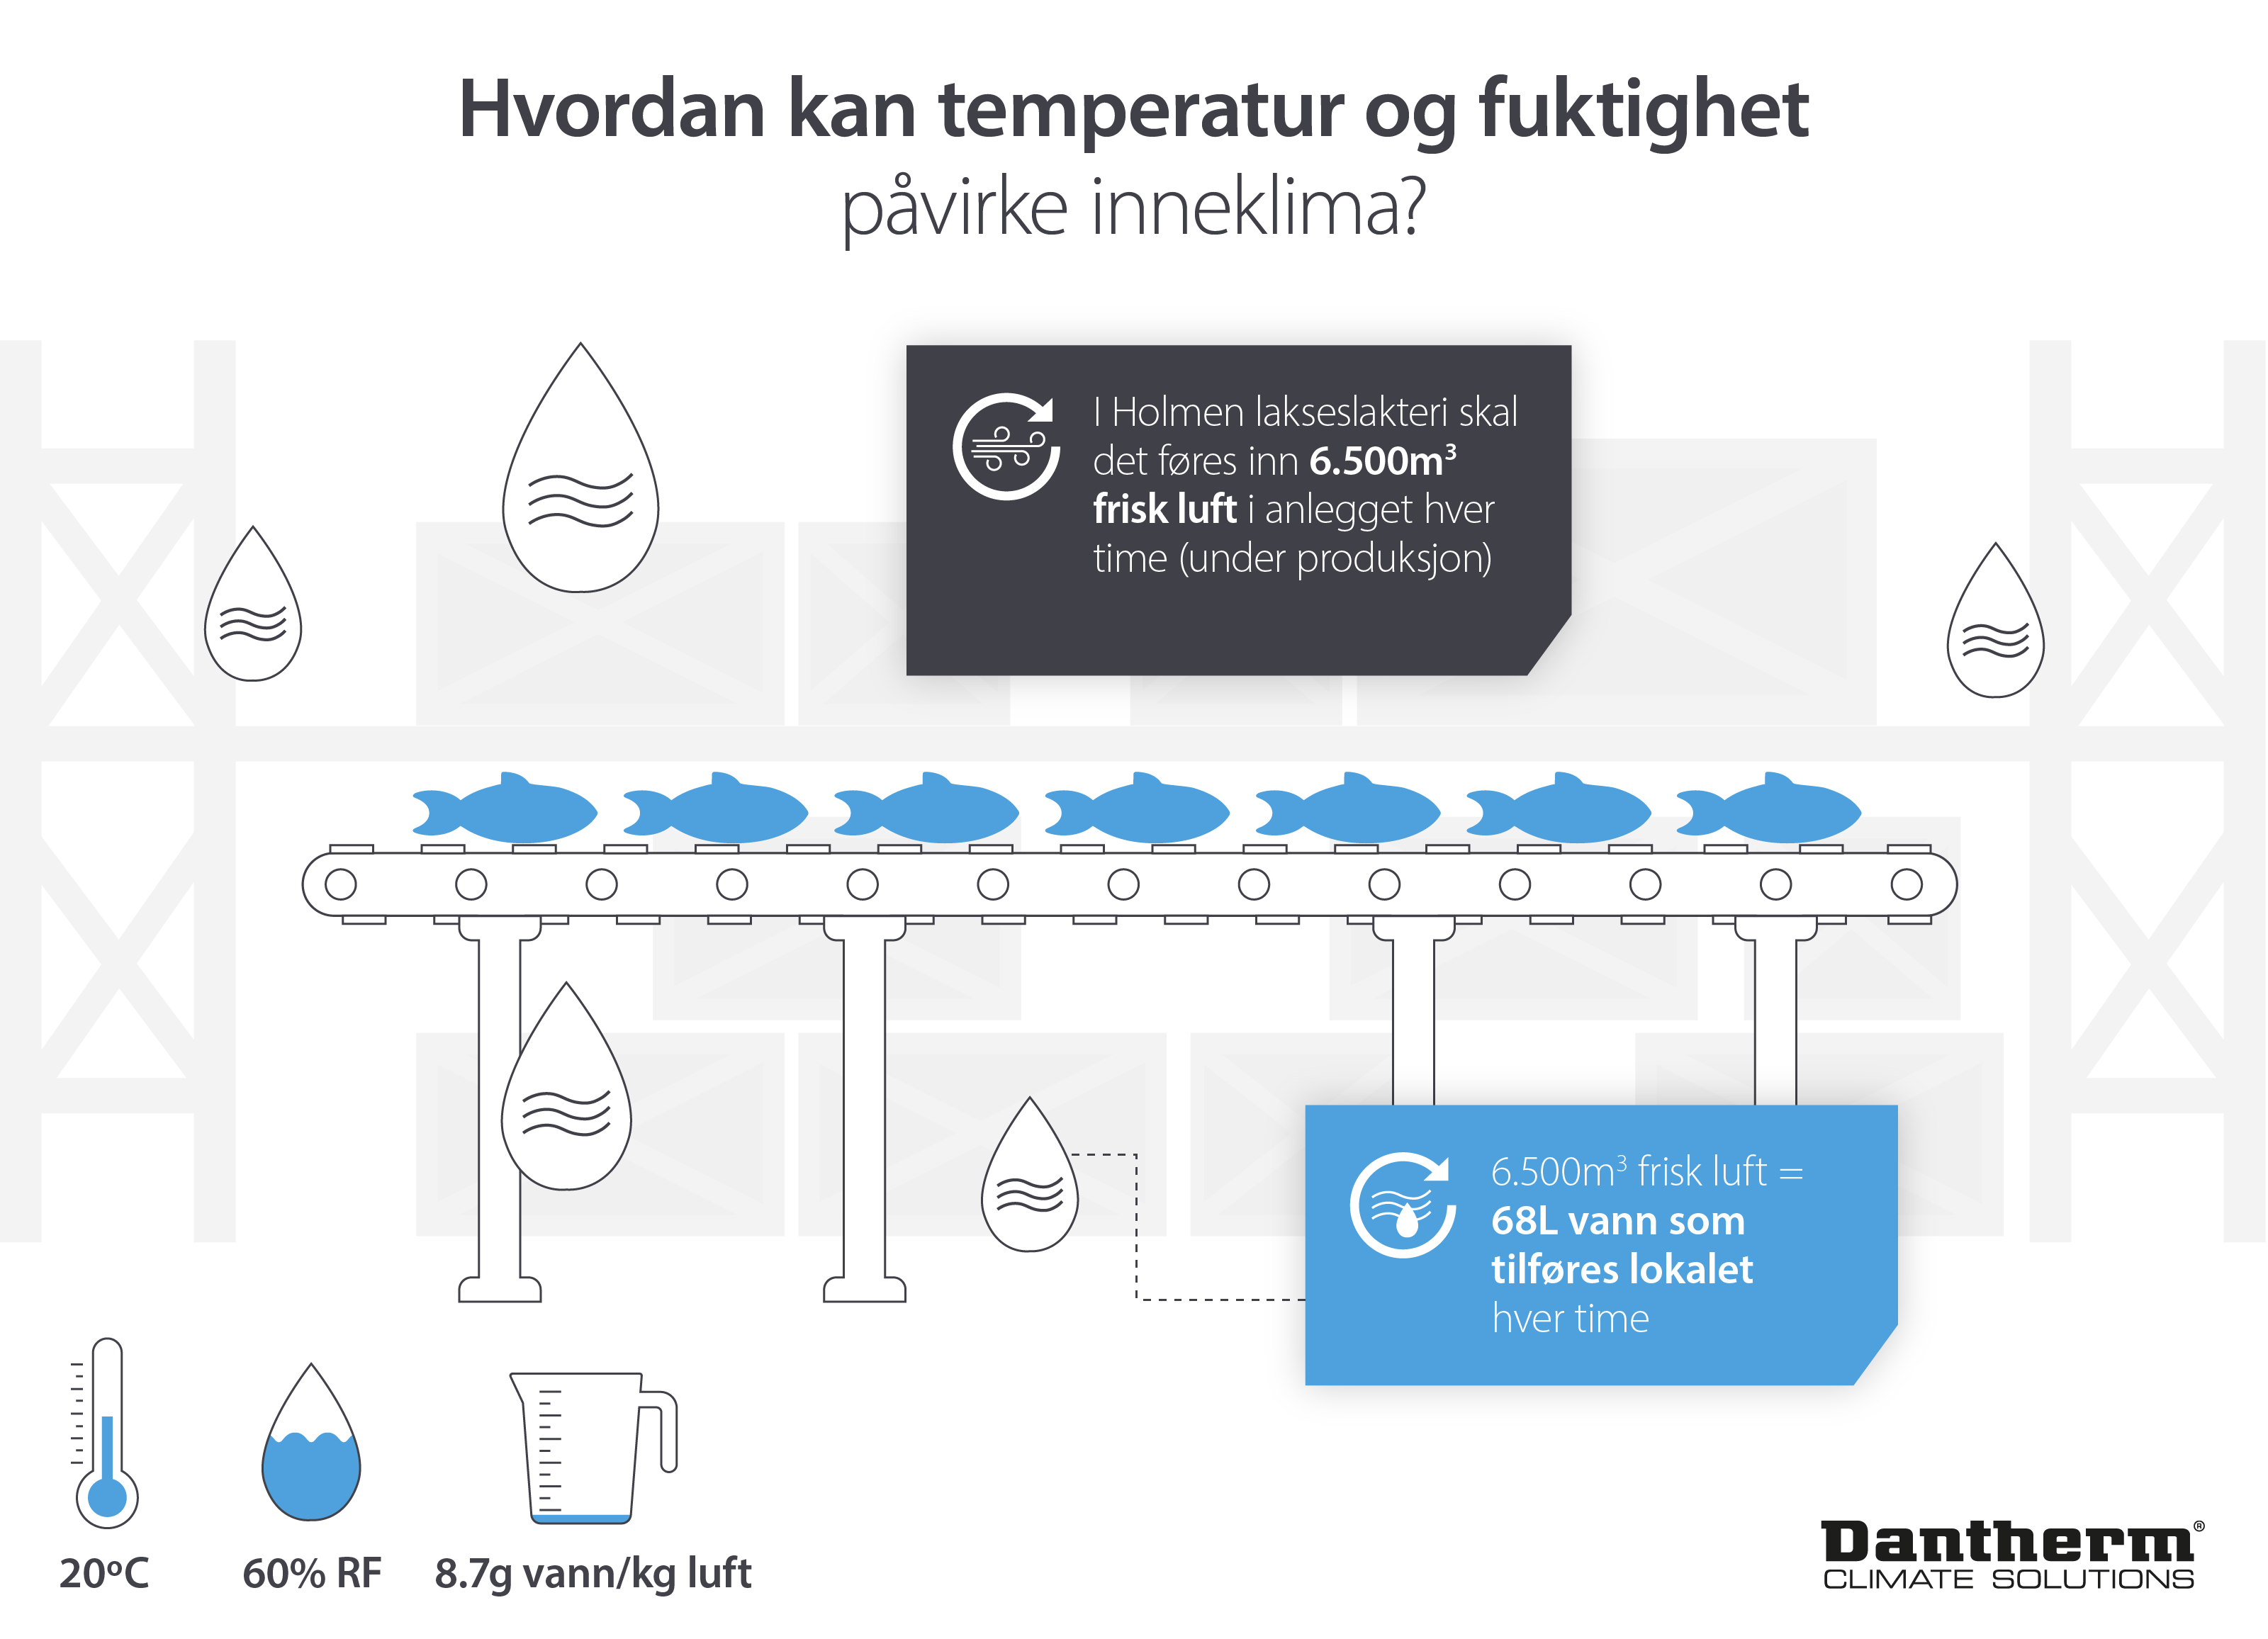 Illustrasjon som viser hvordan temperatur og fuktighet påvirker mengden fuktighet i luften i inneklima